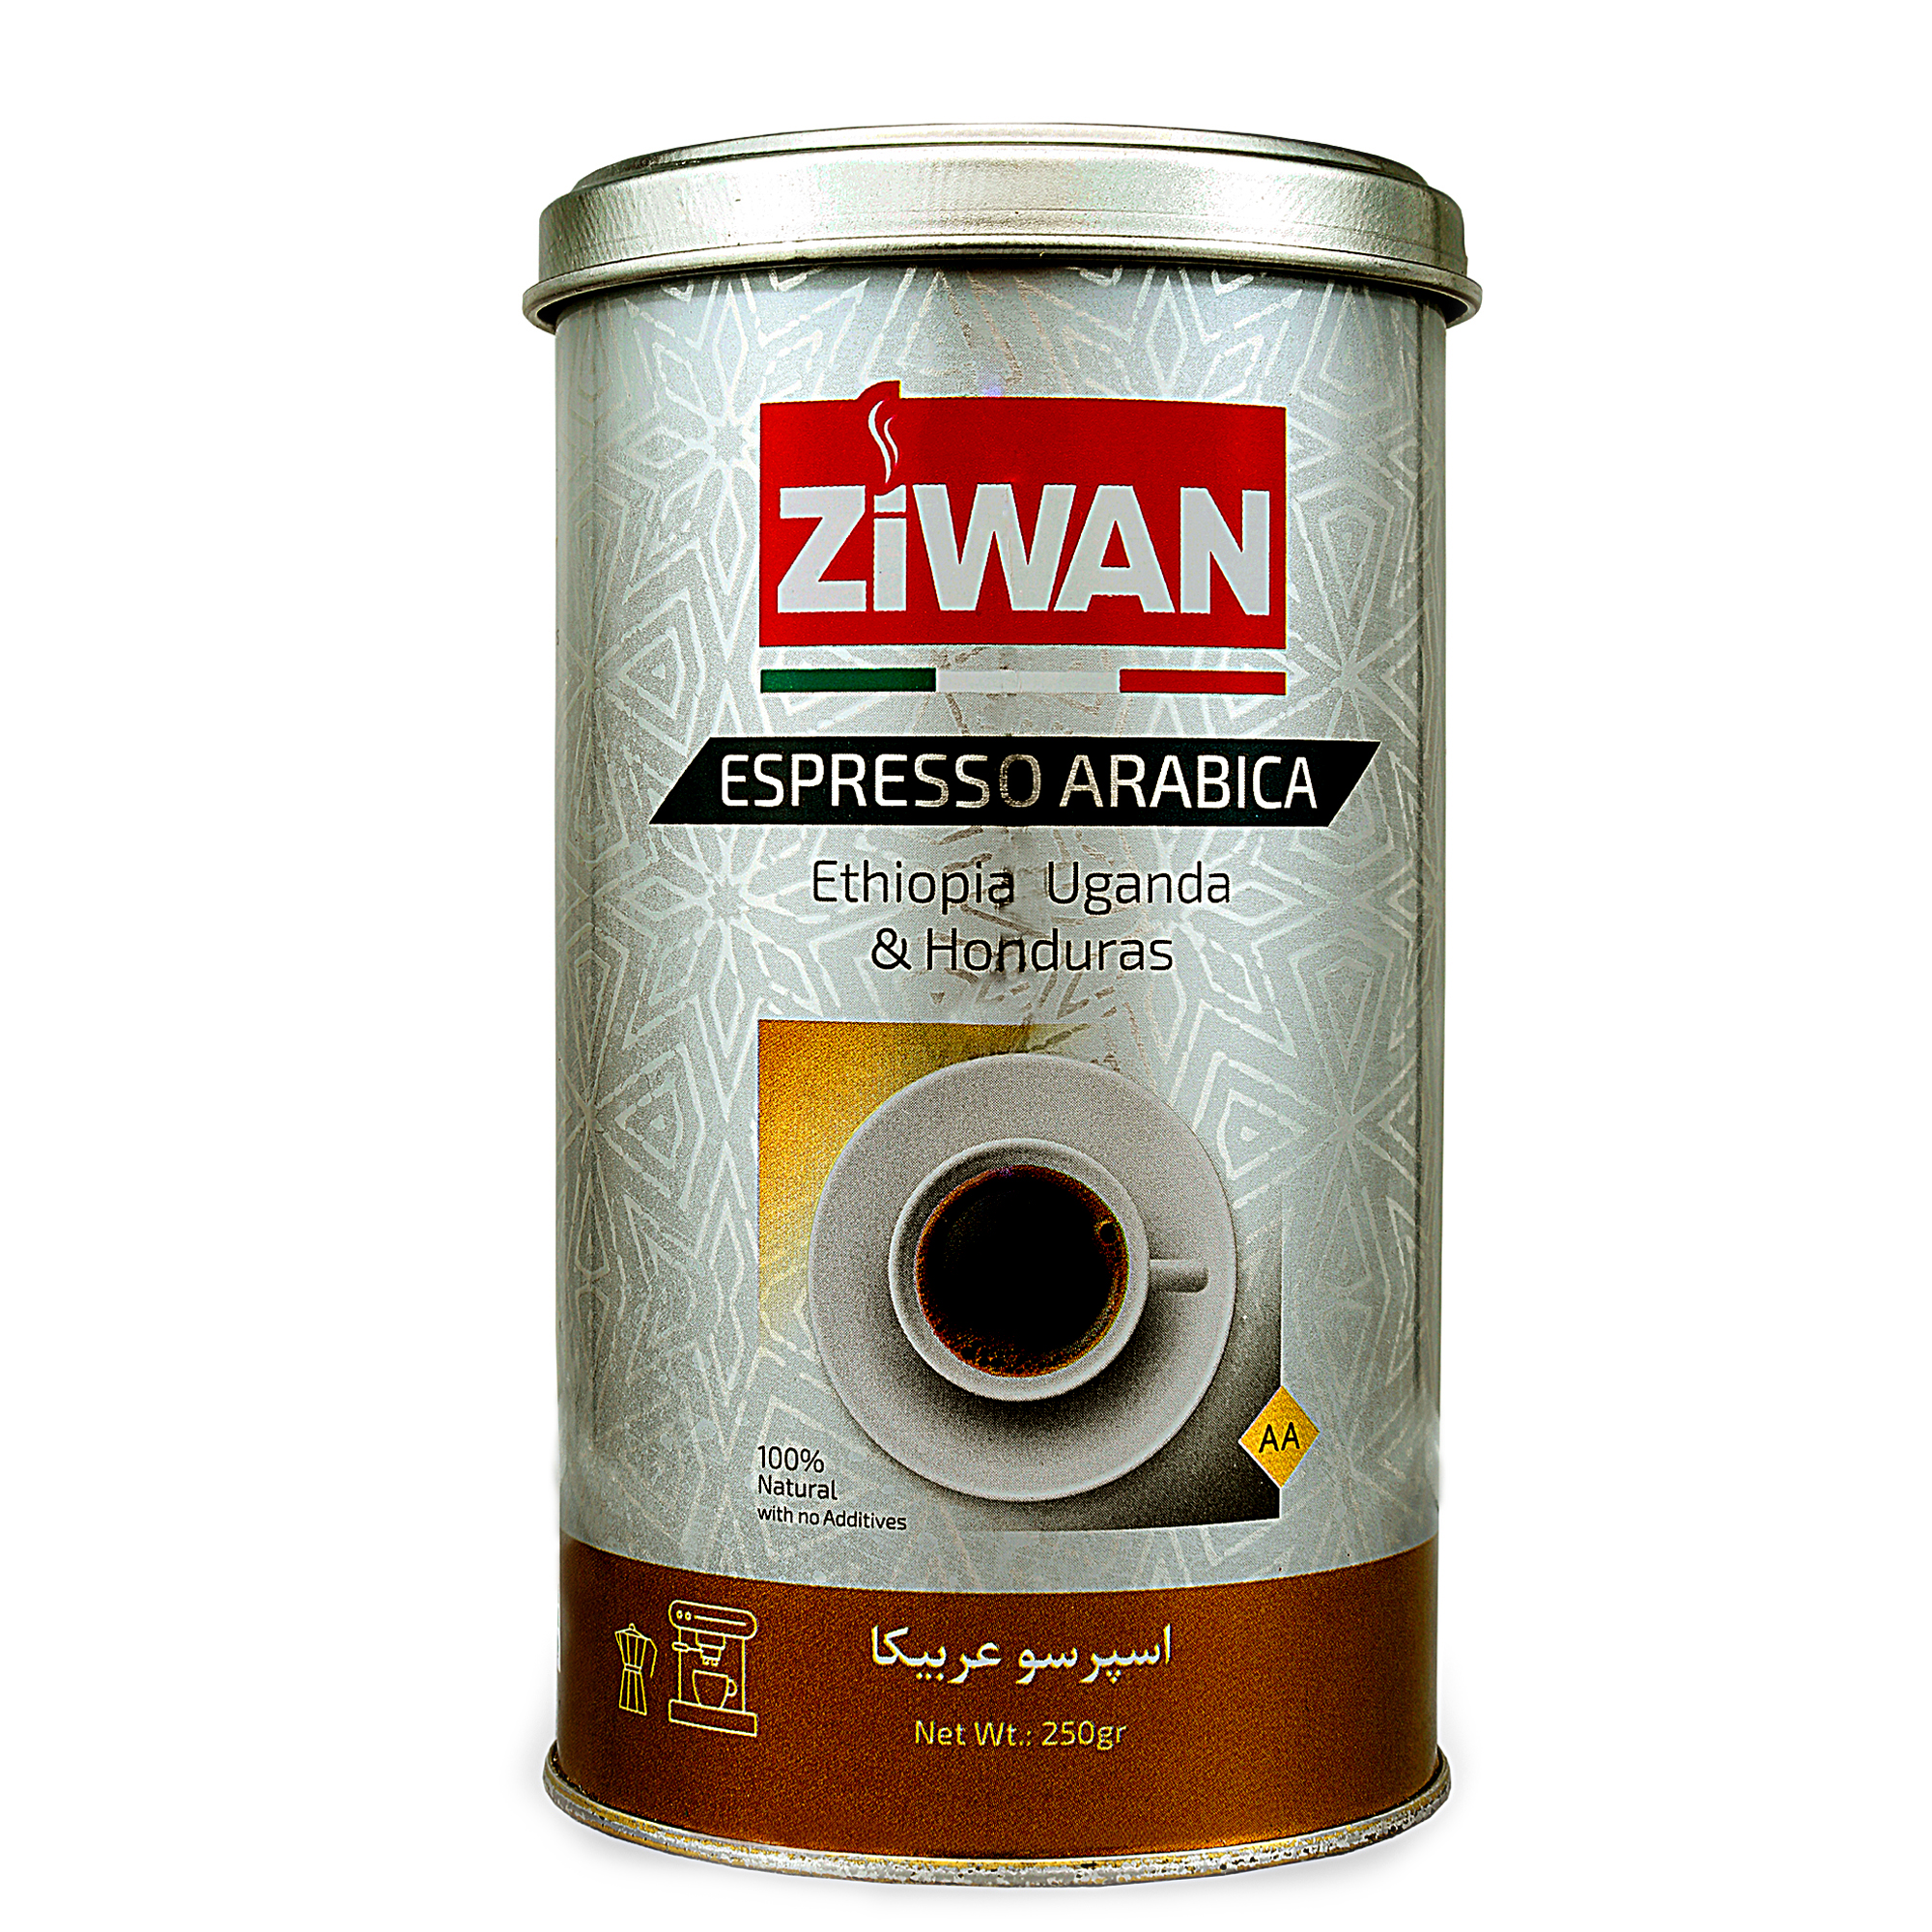 قهوه اسپرسو عربیکا زیوان - 250 گرم